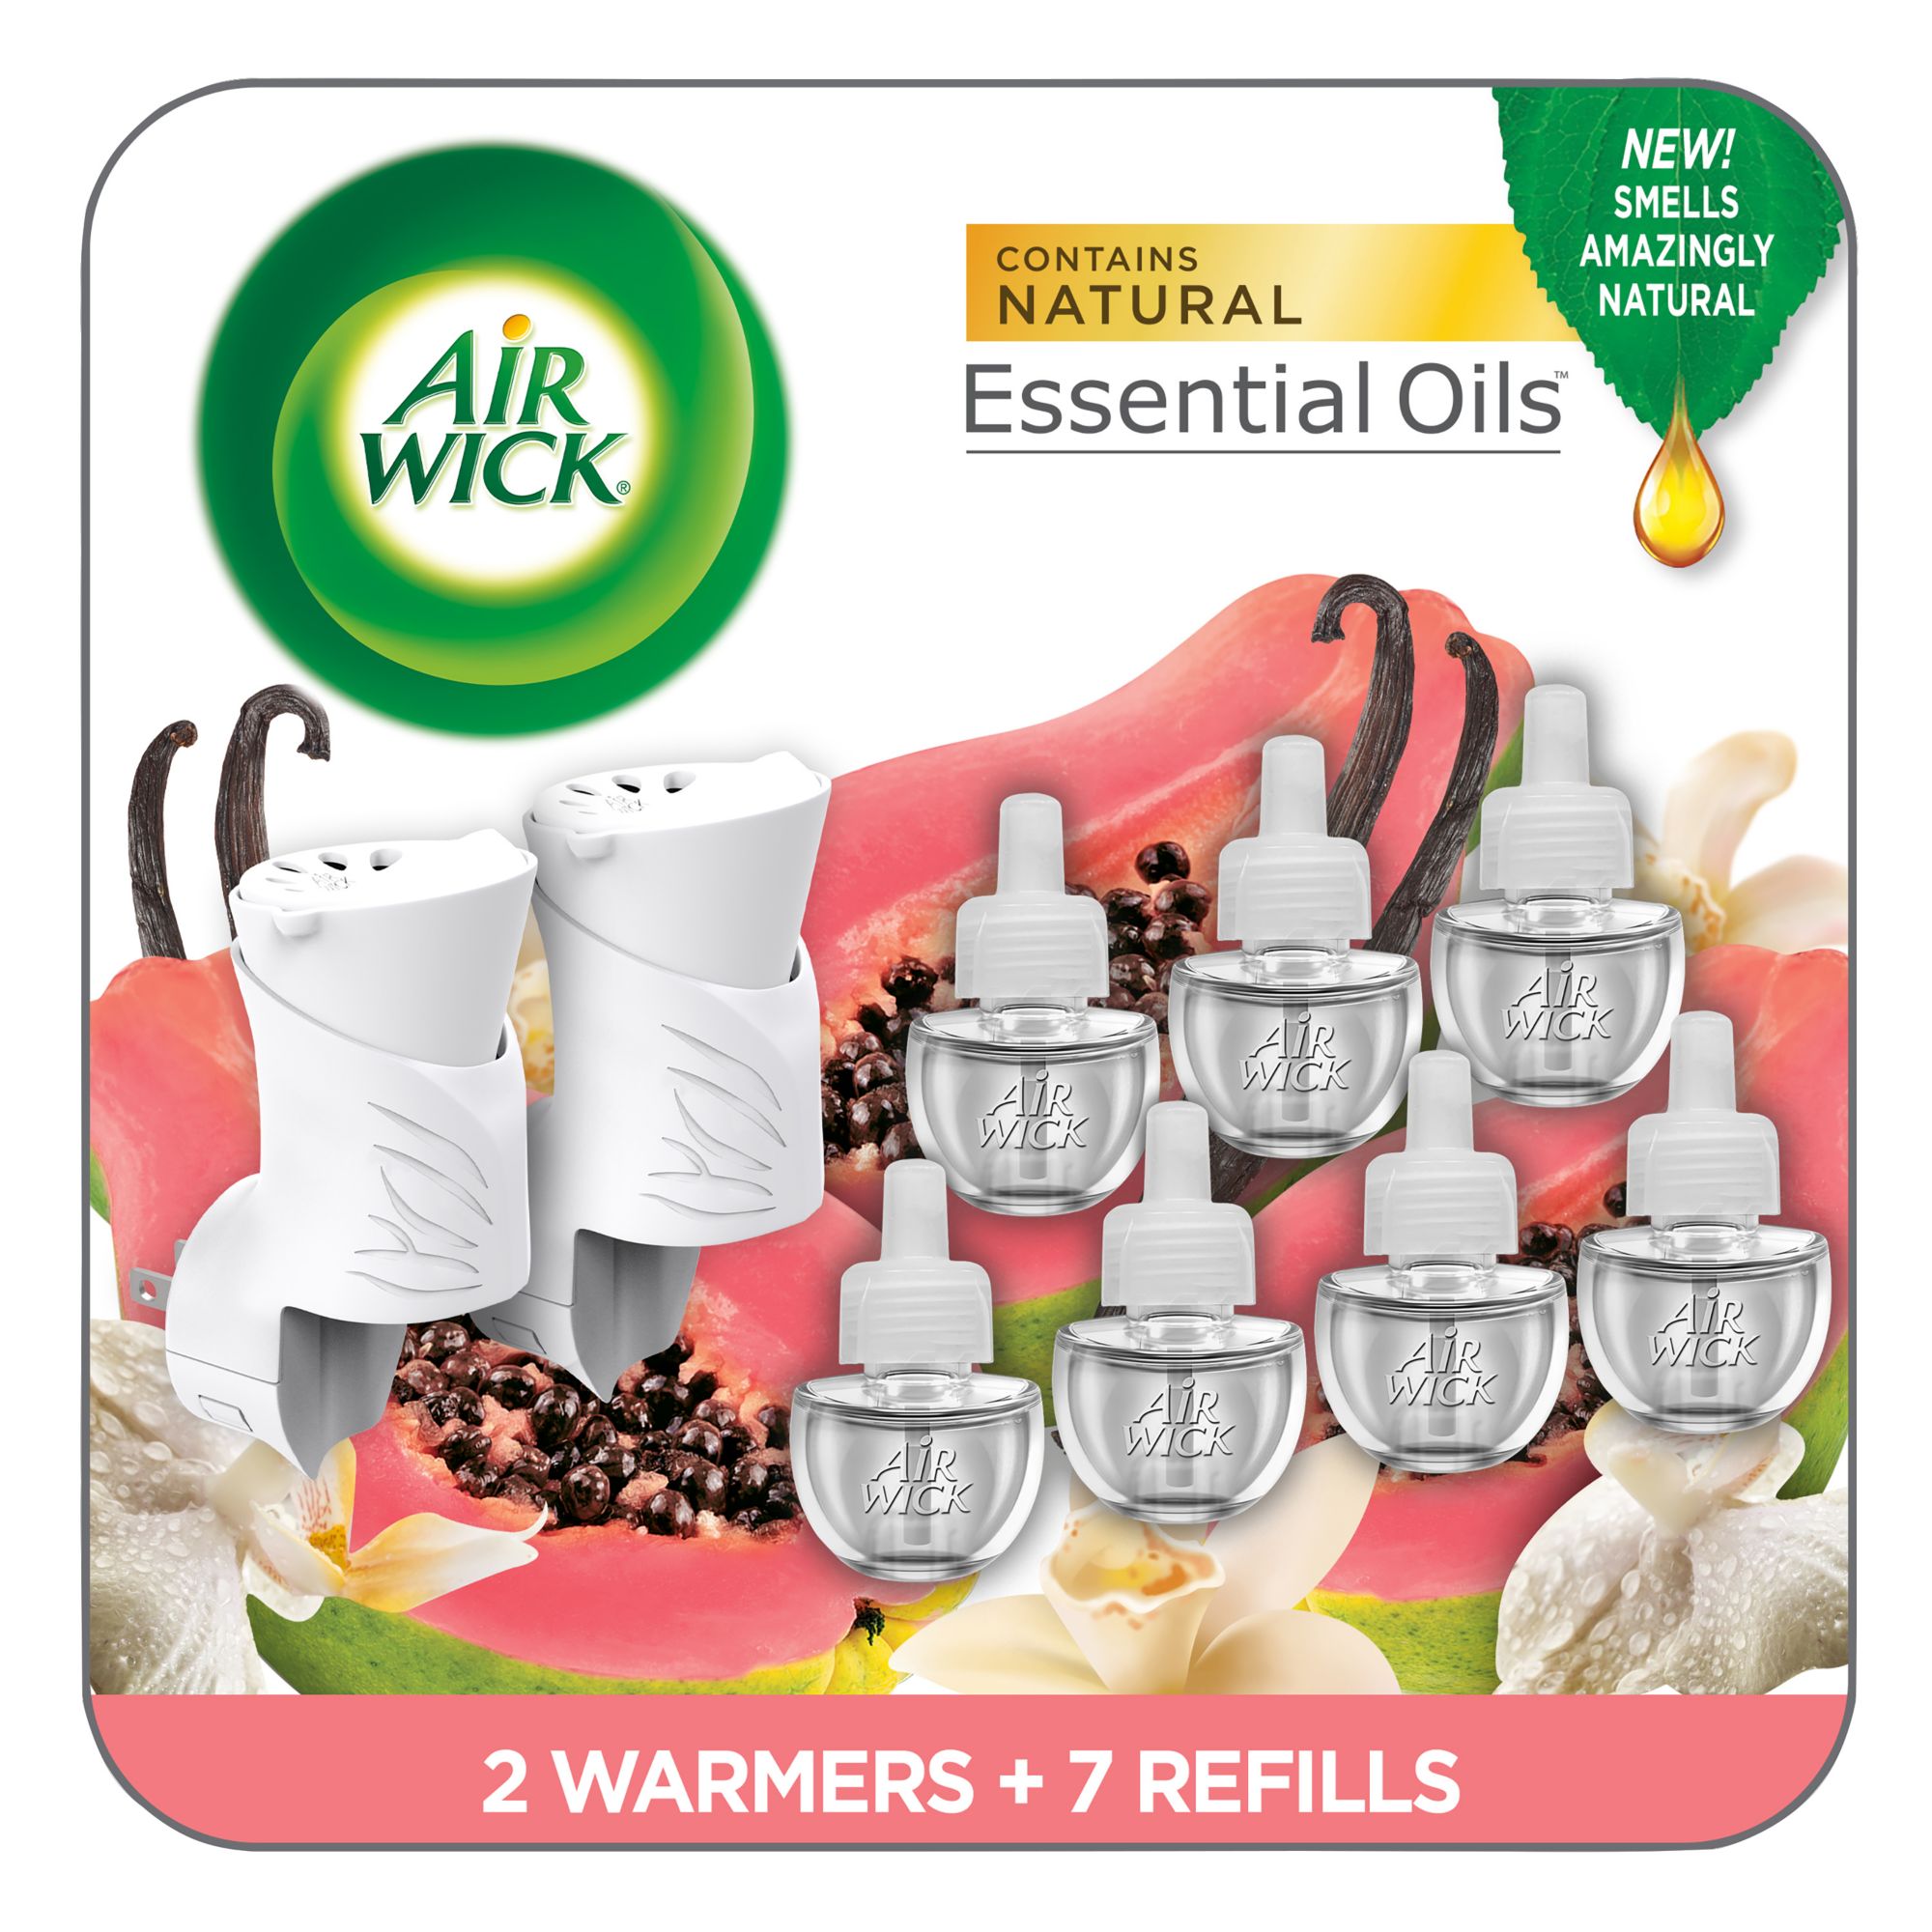 Airwick Refills Scented Oil Starter Kit